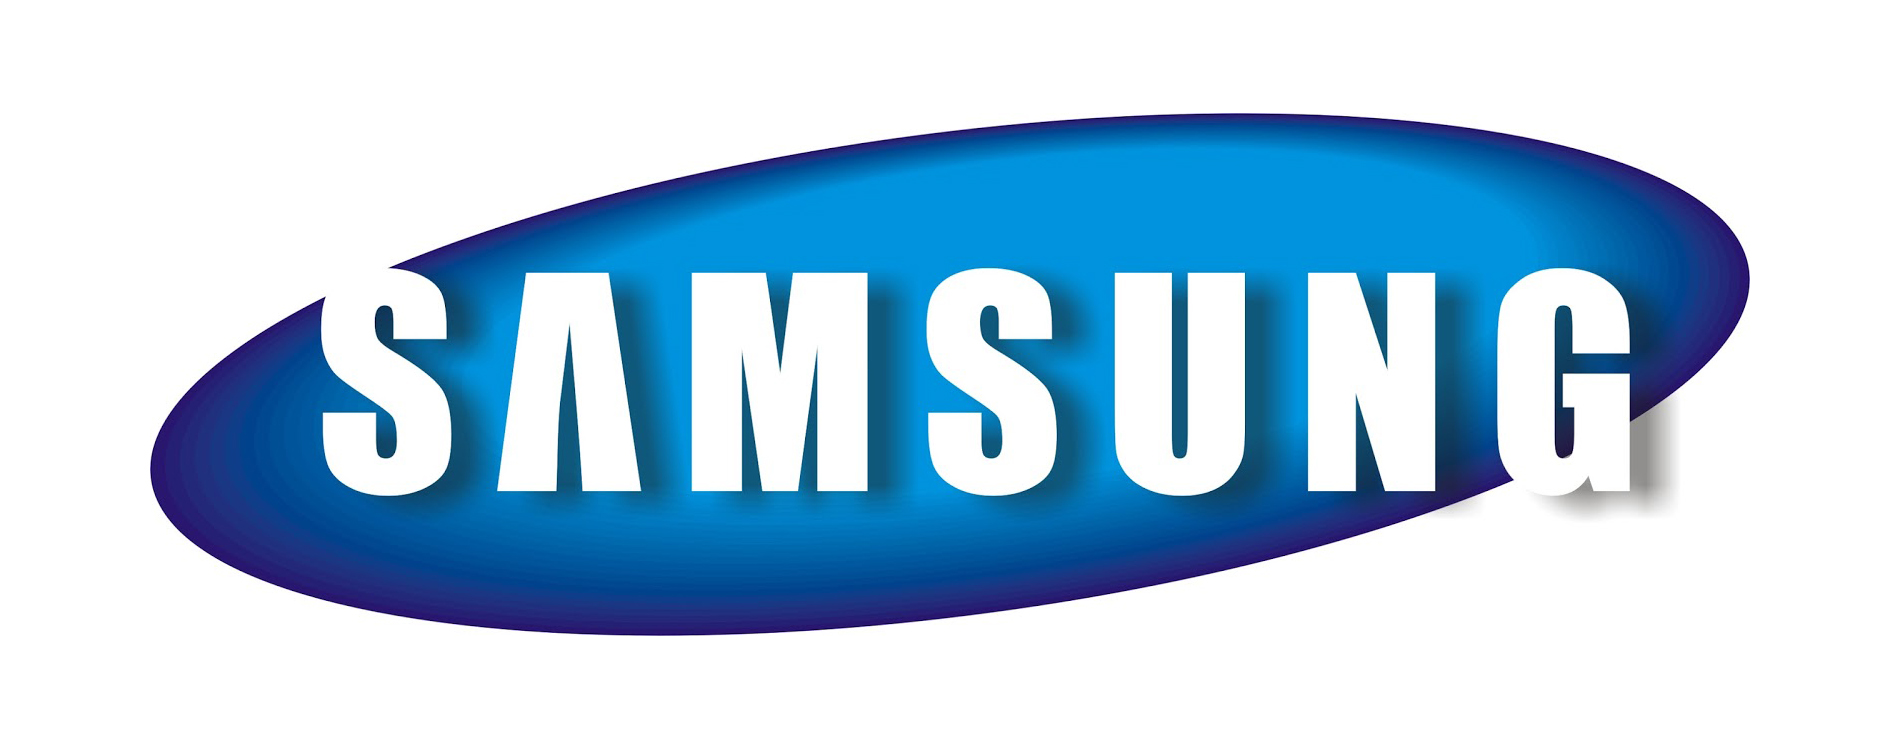 Ten rok nie by szczeglnie dobry dla Samsunga - podsumowanie roku firmy